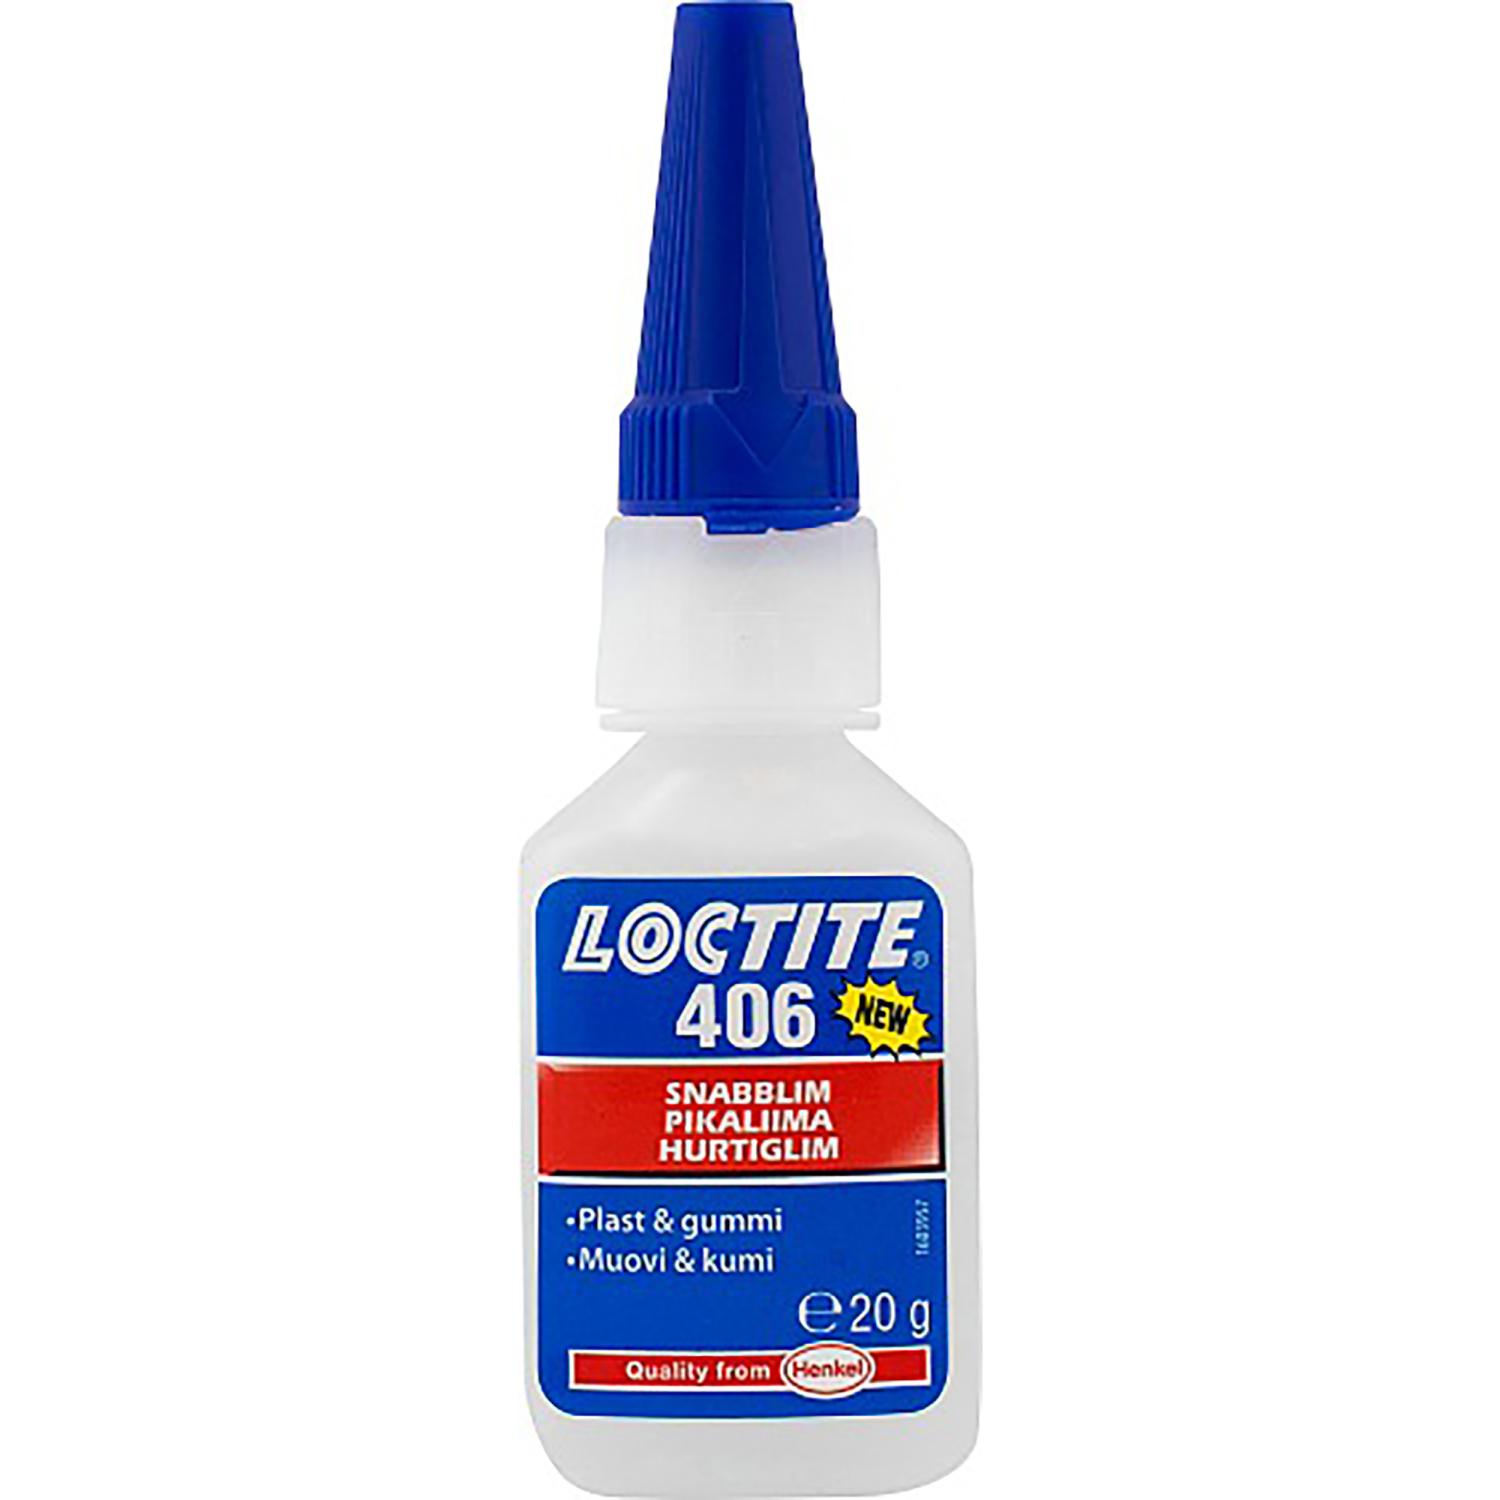 Loctite 406 Snabblim för Gummi och Plast 20g